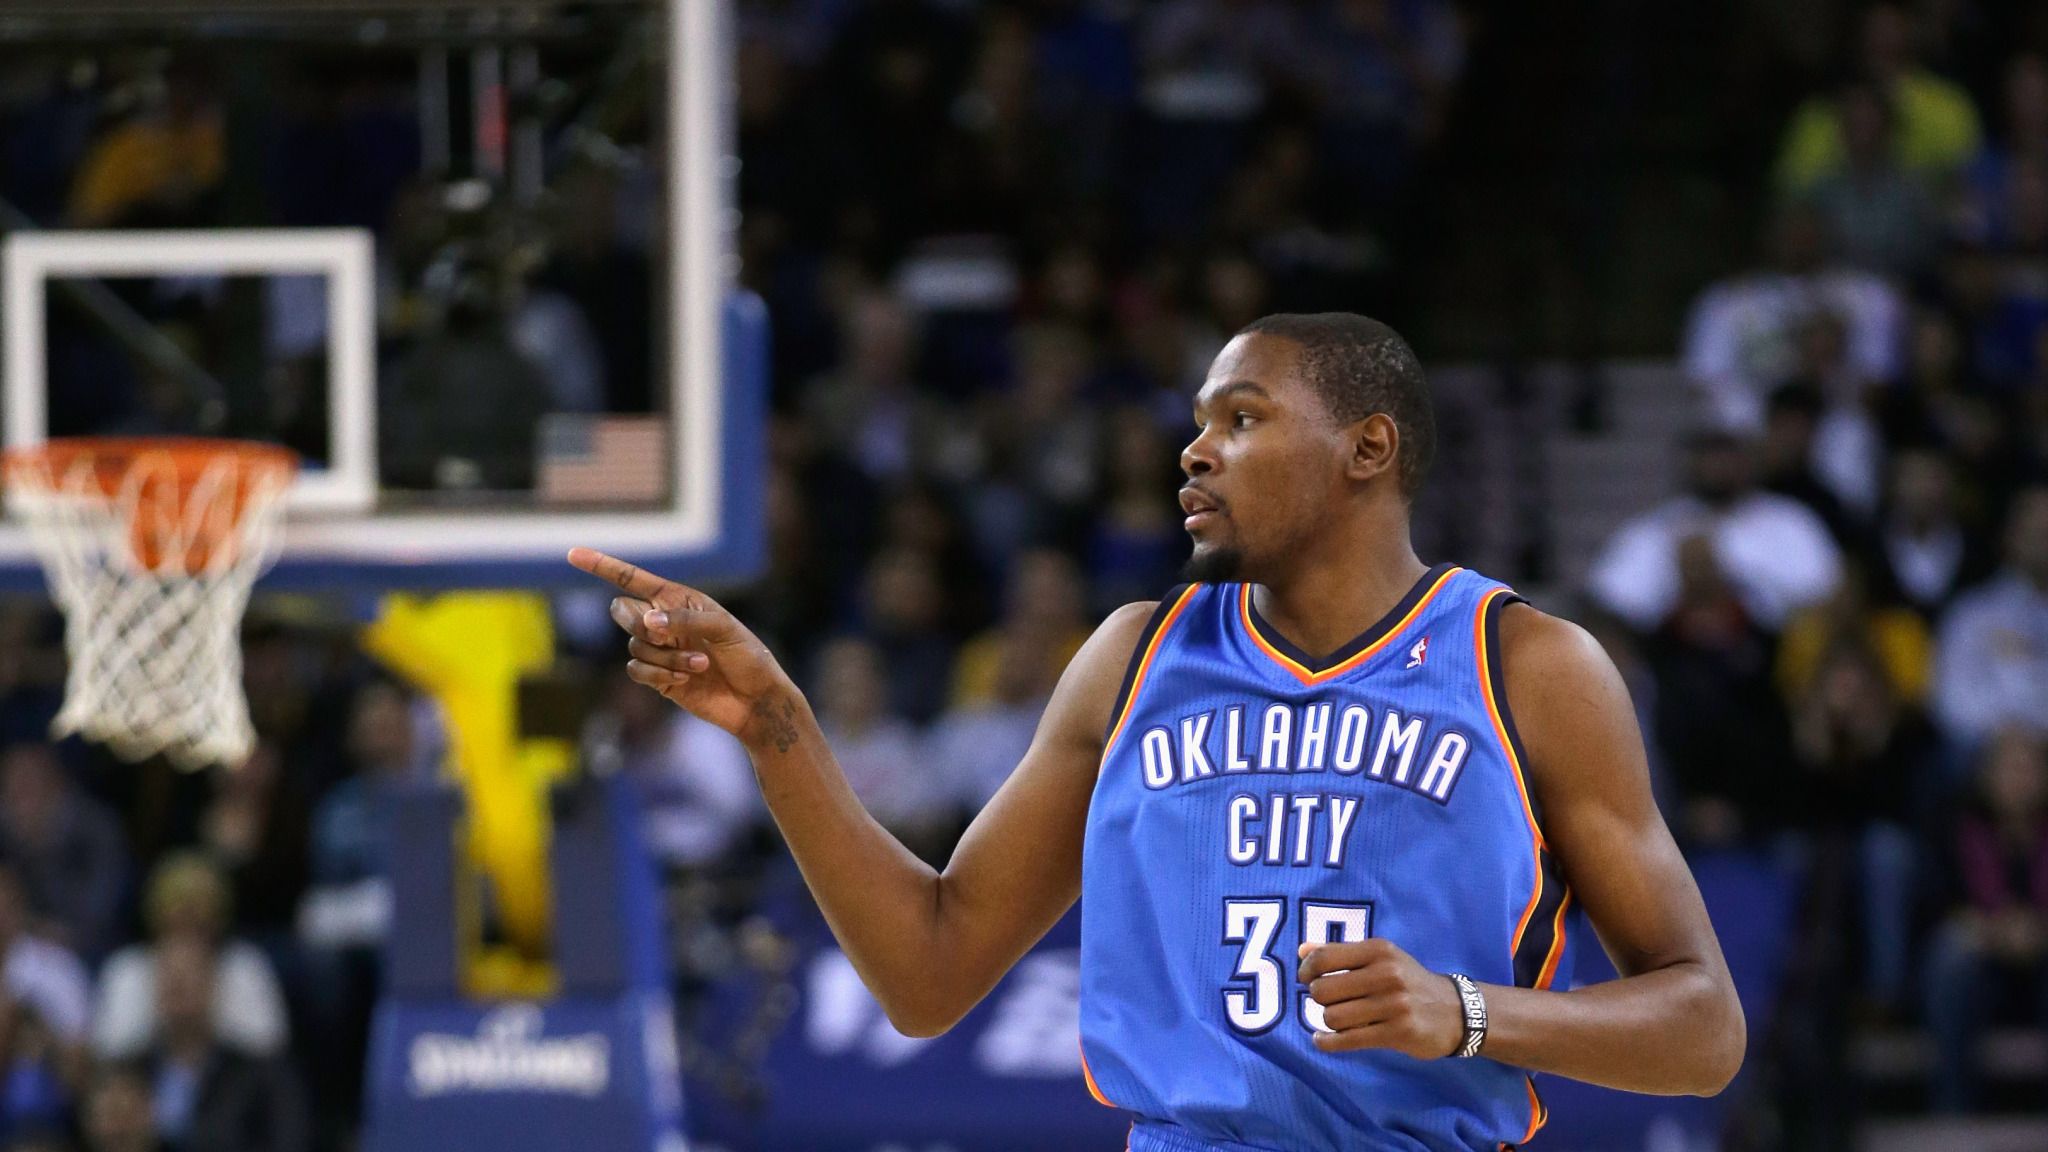 Oklahoma City Thunder's Kevin Durant named the NBA's MVP